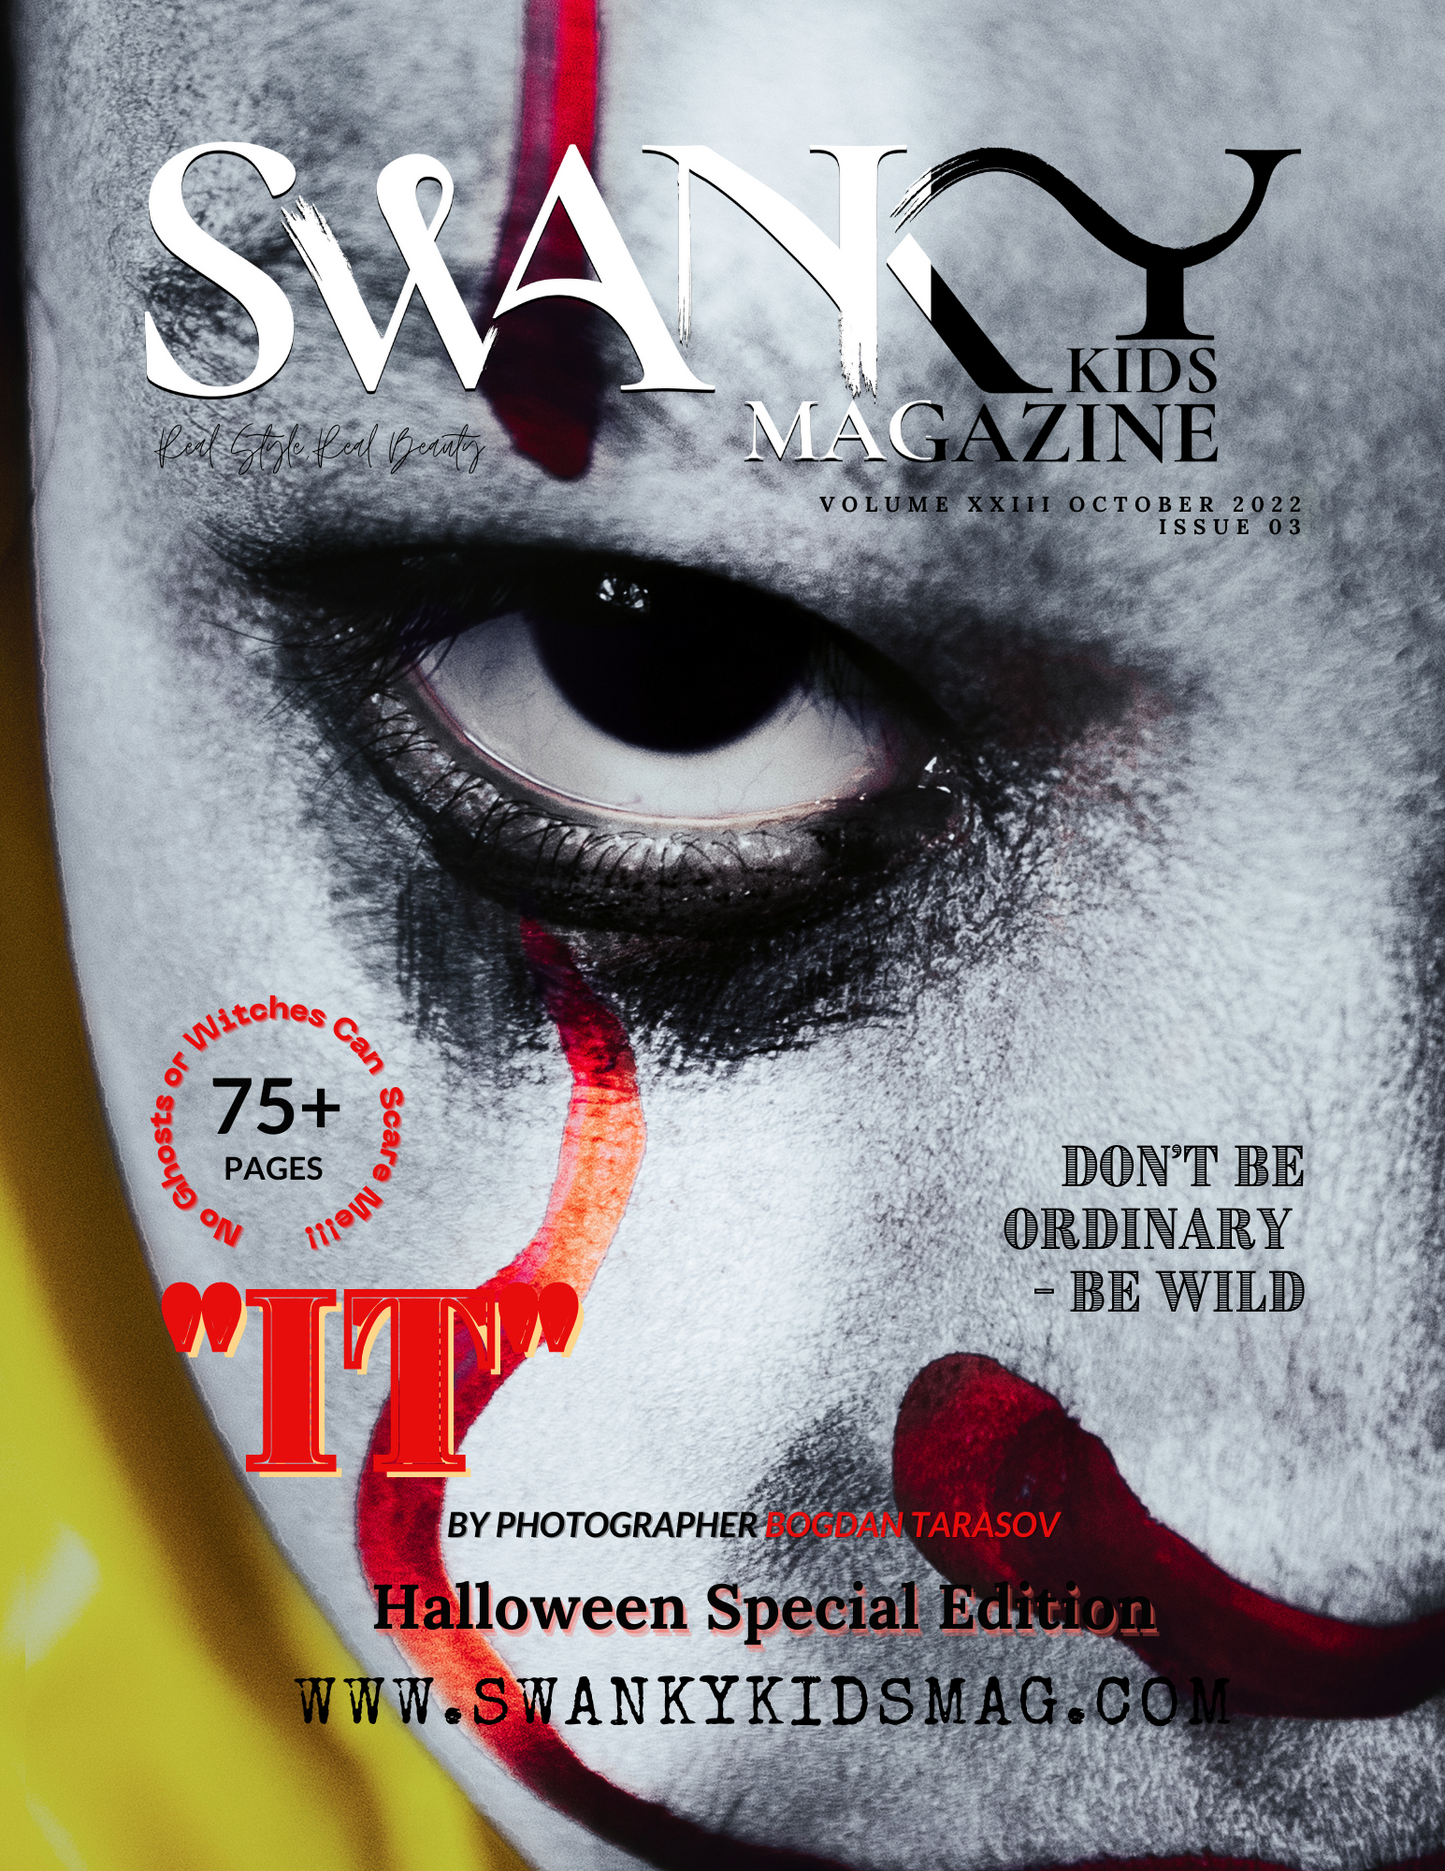 Swanky Kids Magazine October 2022 VOL XXIII Issue 03